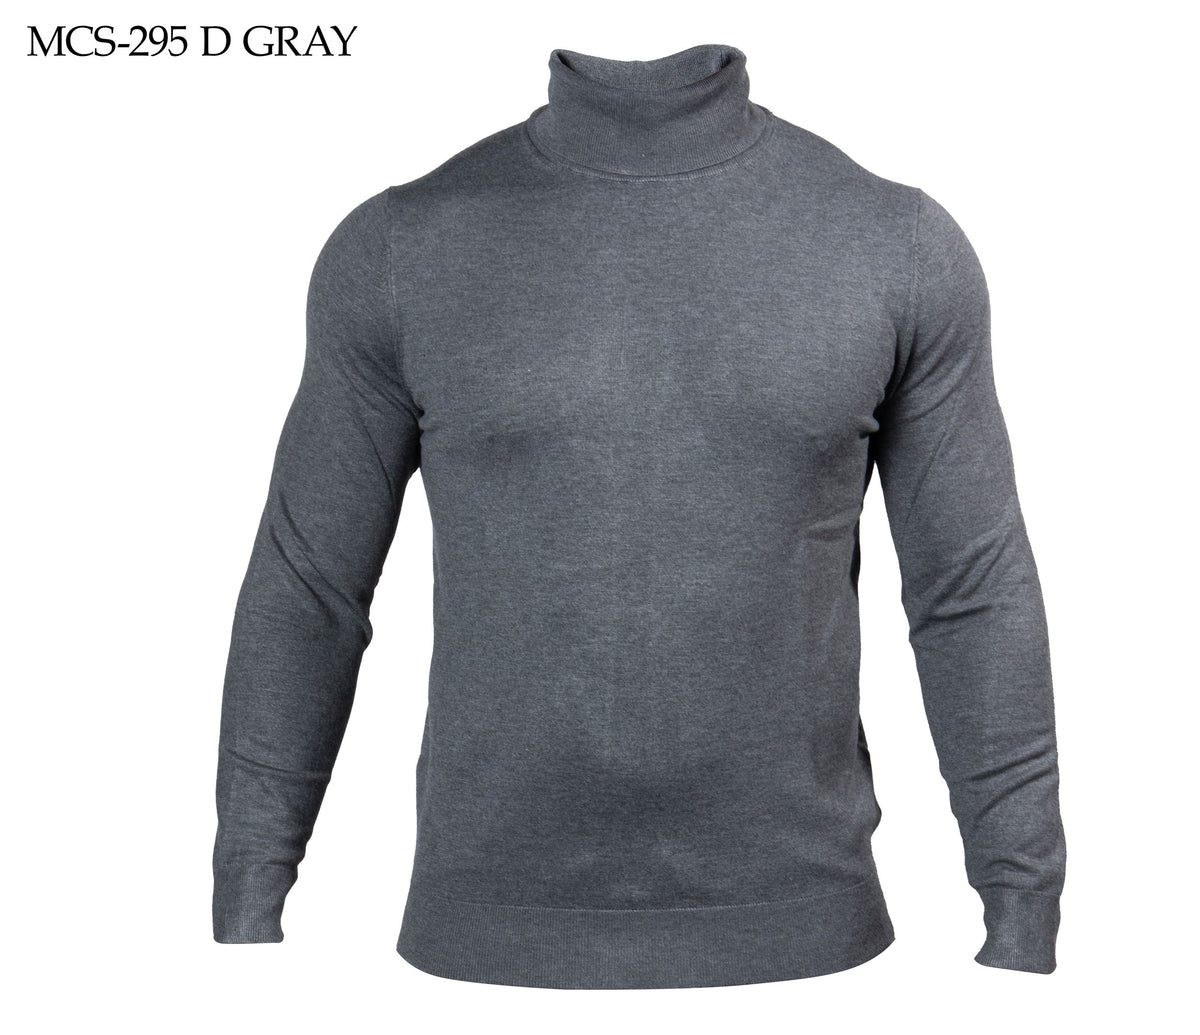 Prestige Dark Grey Turtle Neck Elite Sweater - Dudes Boutique